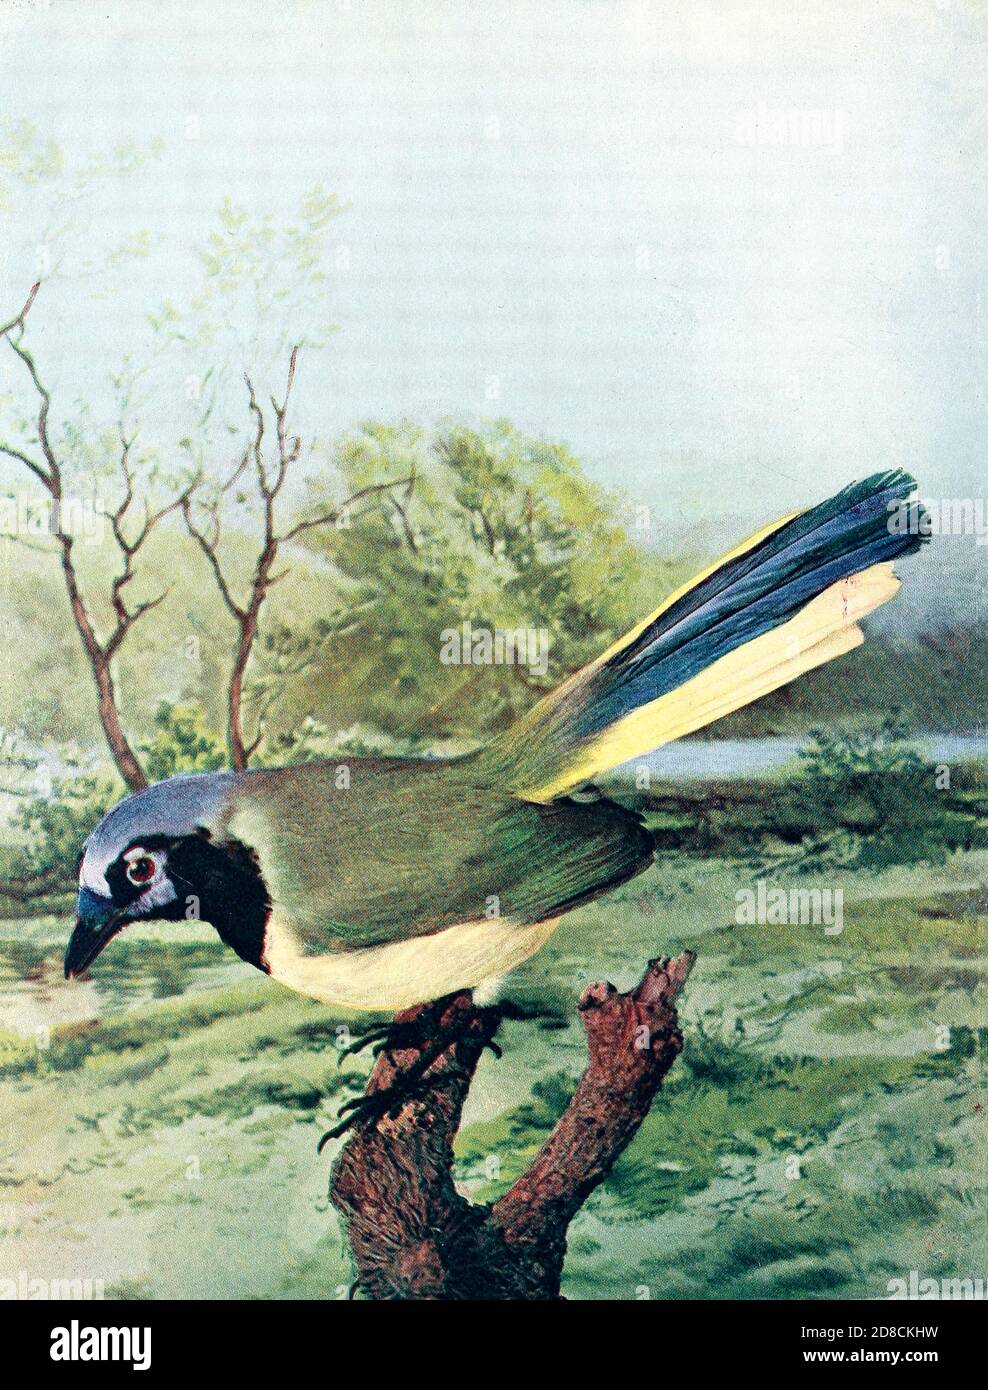 El jay verde (Cyanocorax luxuosus) [aquí como Arizona Green Jay (Xanthoura luxuousa)] es una especie de los jays del Nuevo Mundo, y se encuentra en Centroamérica. De aves : ilustrado por la fotografía en color : una serie mensual. Conocimiento de la vida de las aves Vol 1 no 4 Abril 1897 Foto de stock